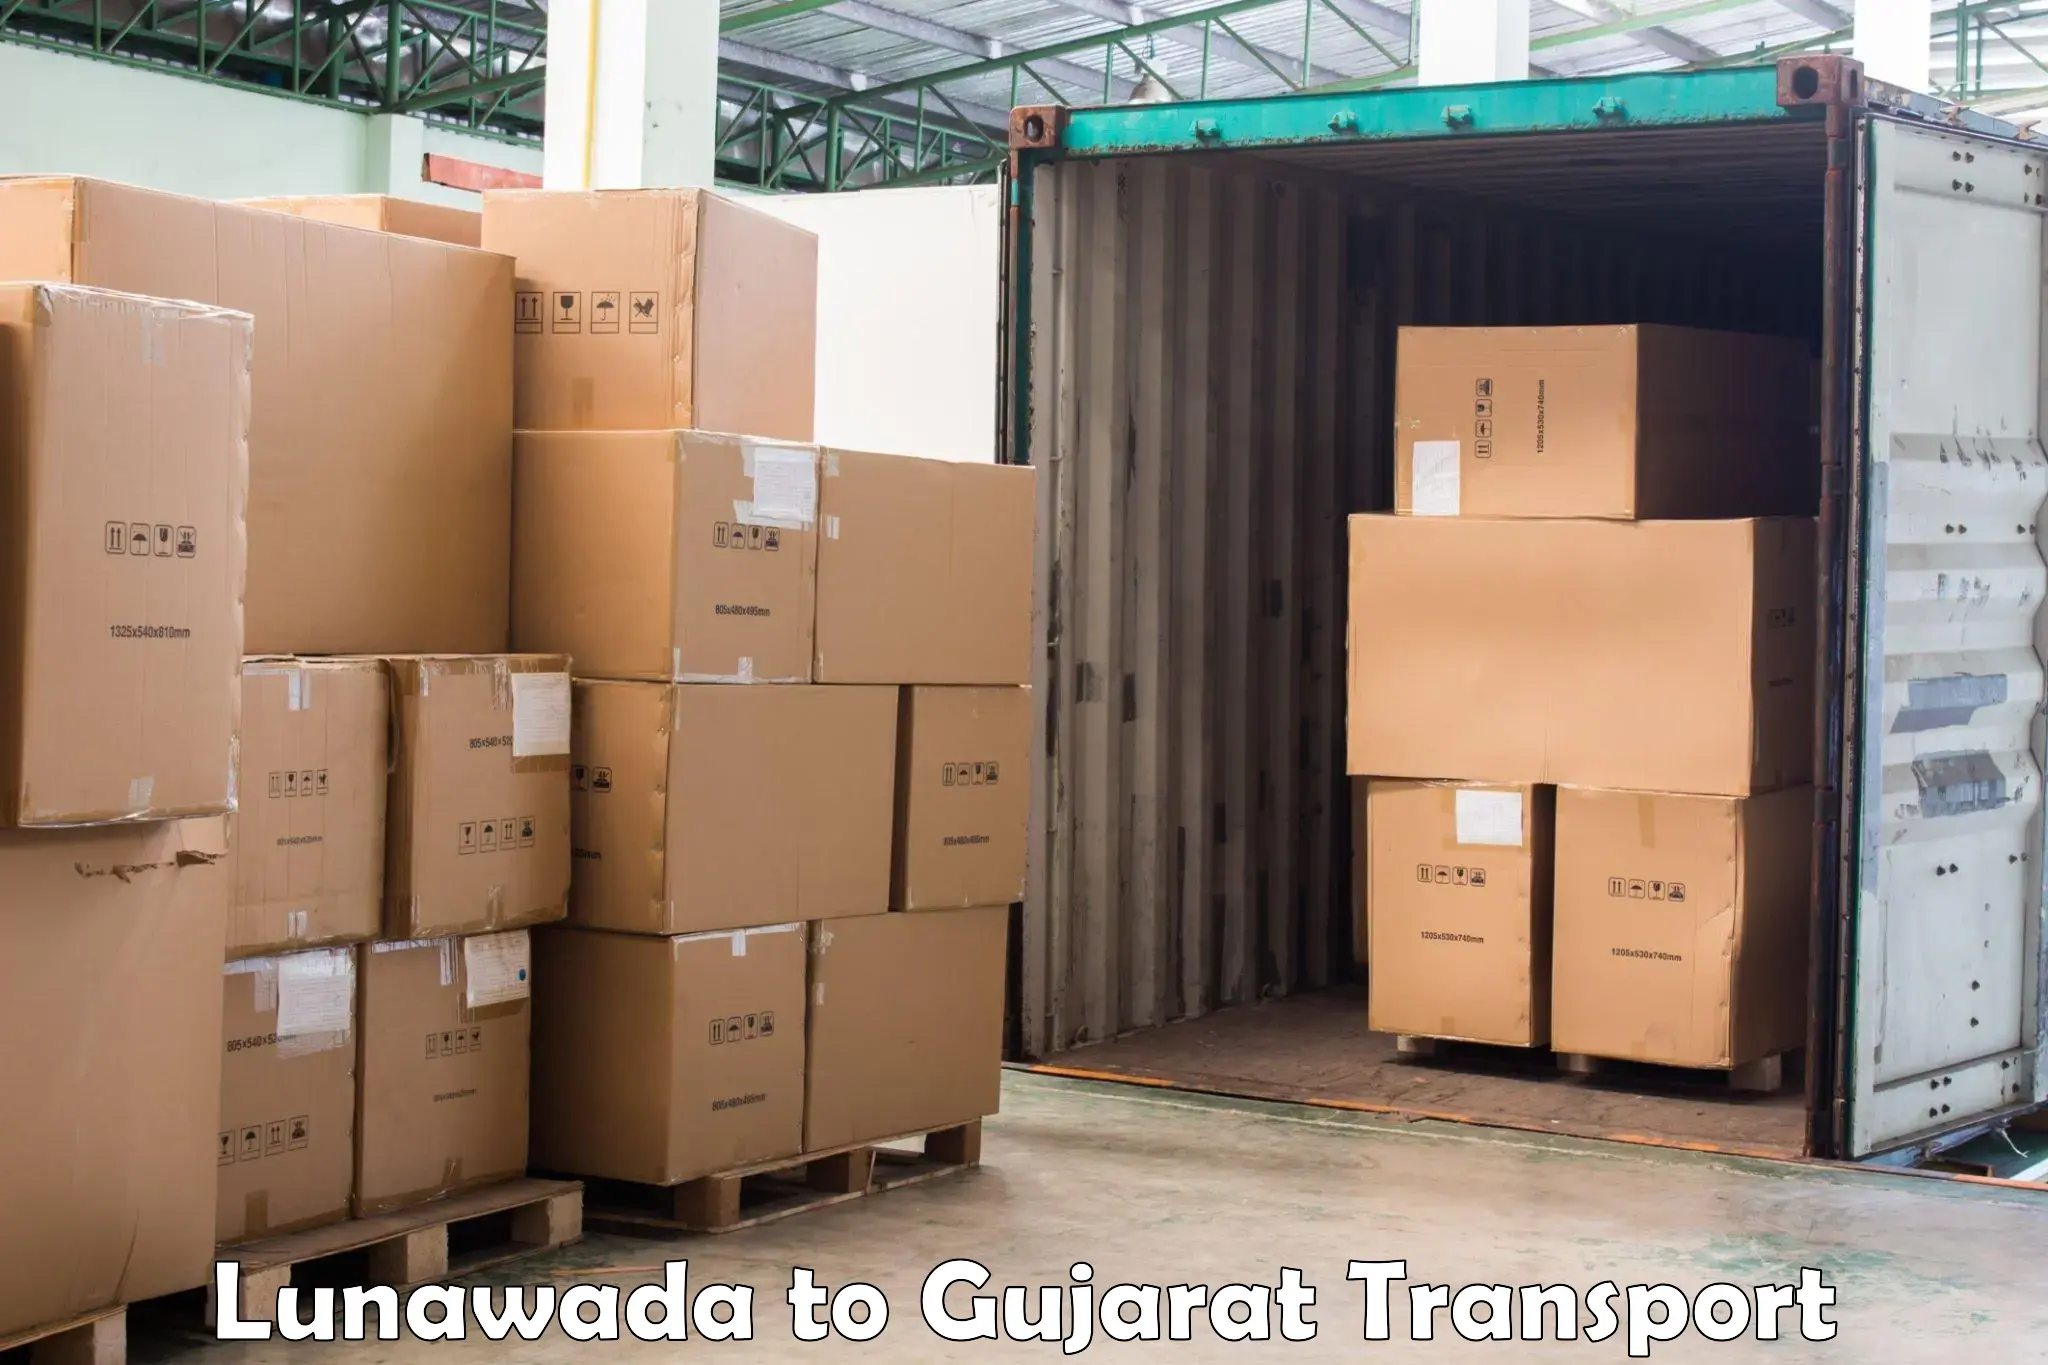 Commercial transport service Lunawada to Dhoraji